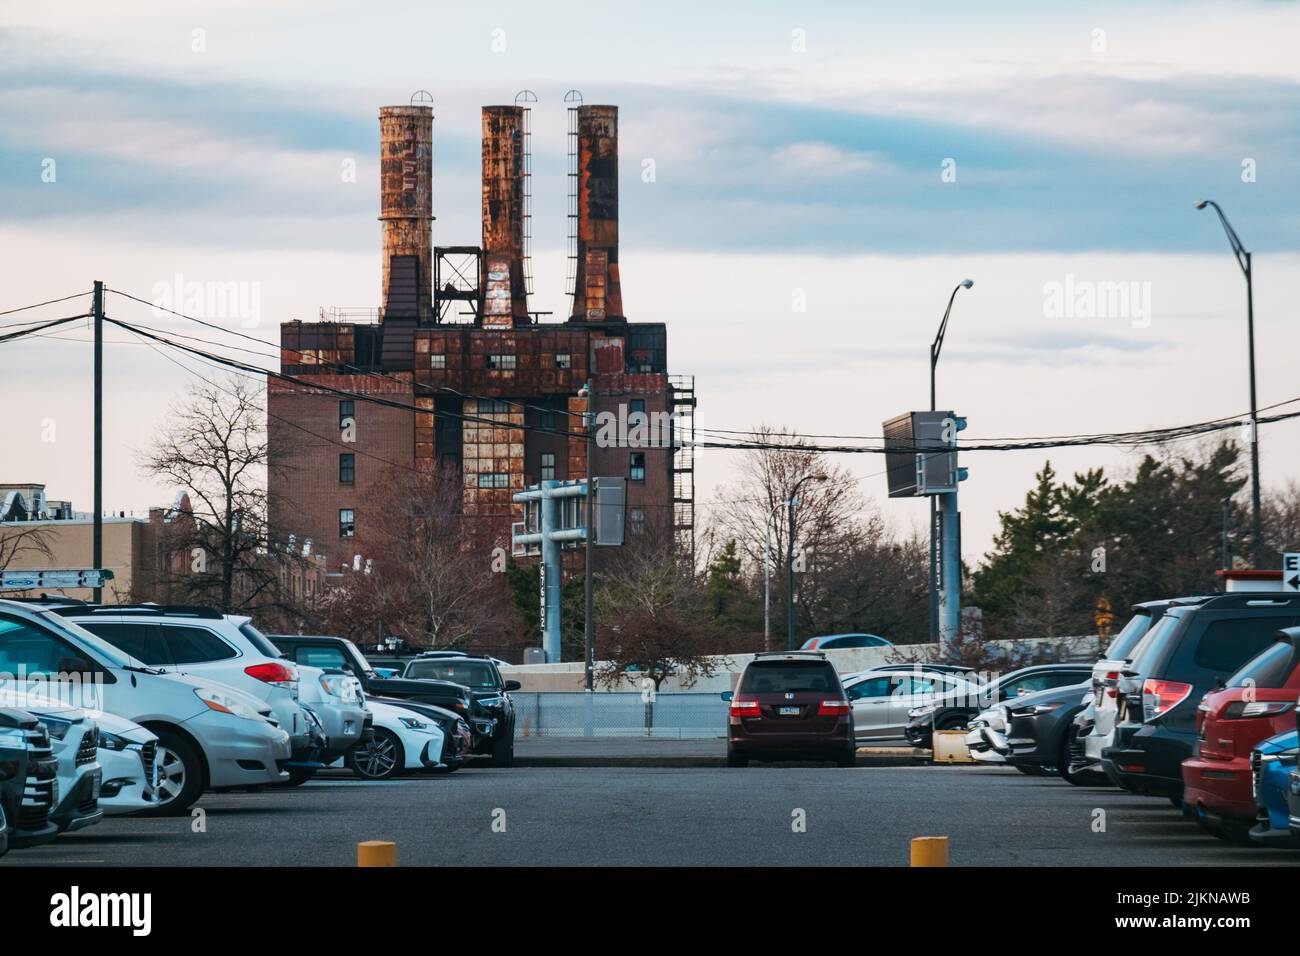 La antigua planta de generación de vapor Willow en Filadelfia, EE.UU. Construido en 1927, ahora desaparecido y abandonado. Foto de stock